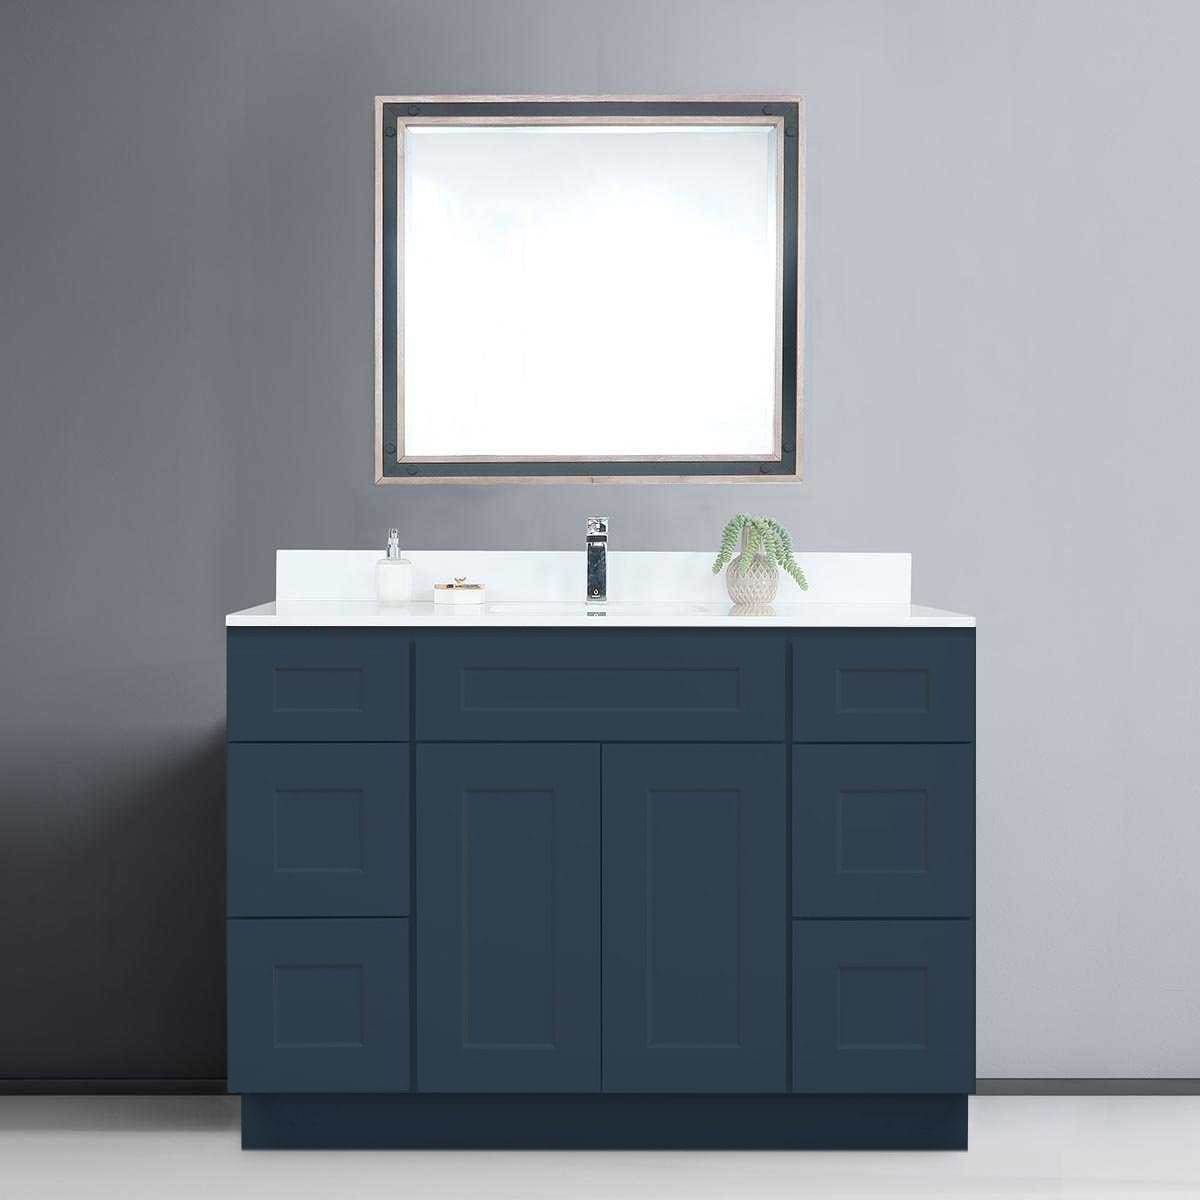 Riley & Higgs Bathroom Vanity 48 Inch Navy Blue Shaker Single Sink Bathroom Vanity with Drawers